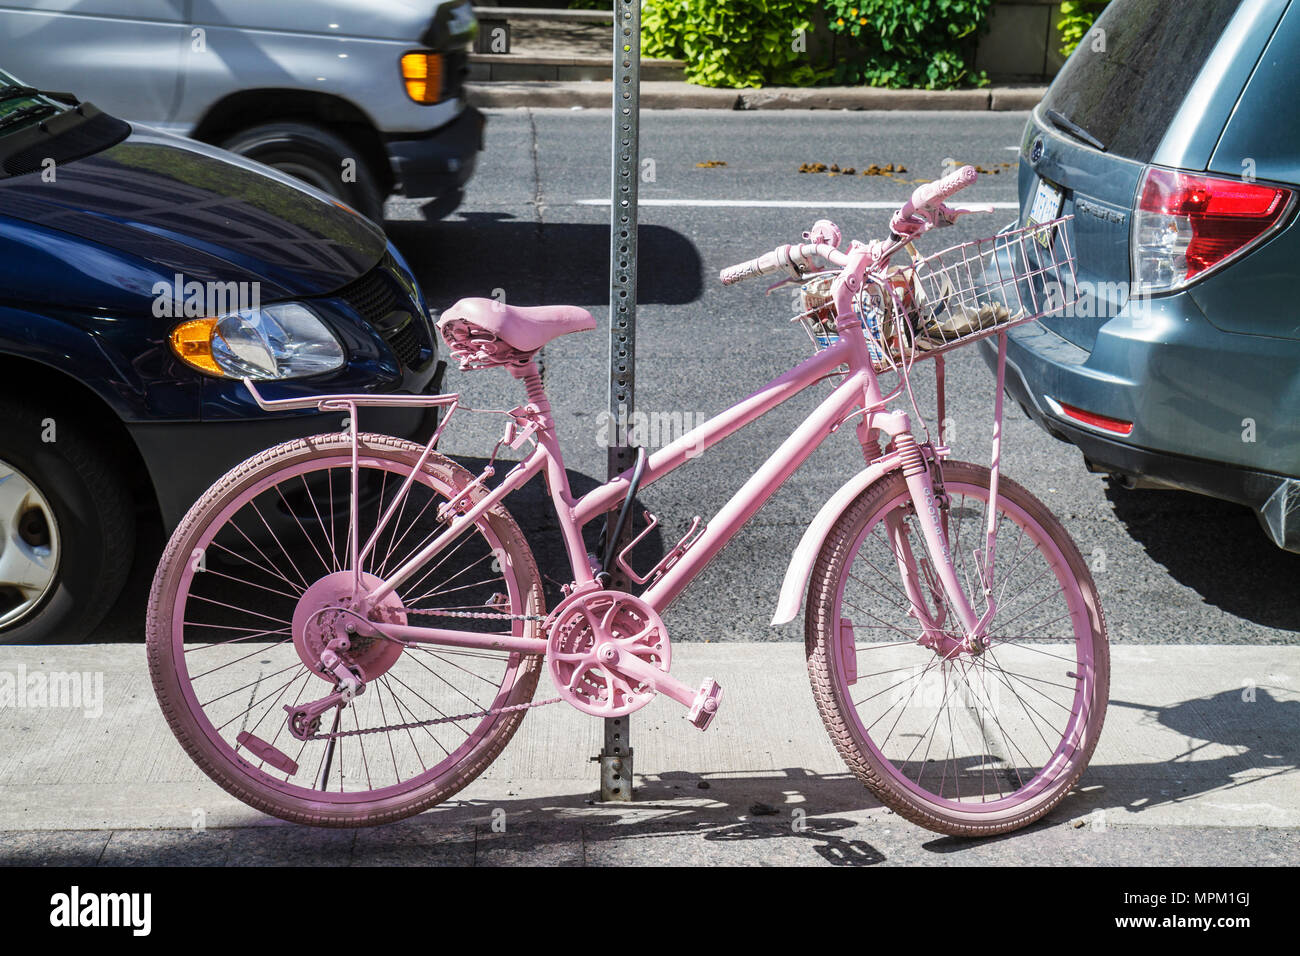 Toronto Canada,College Street,vélo abandonné,vélo,équitation,vélo,pilote,repeint,le bon projet de vélo,rose pastel,désobéissance civique,symbole,pr Banque D'Images